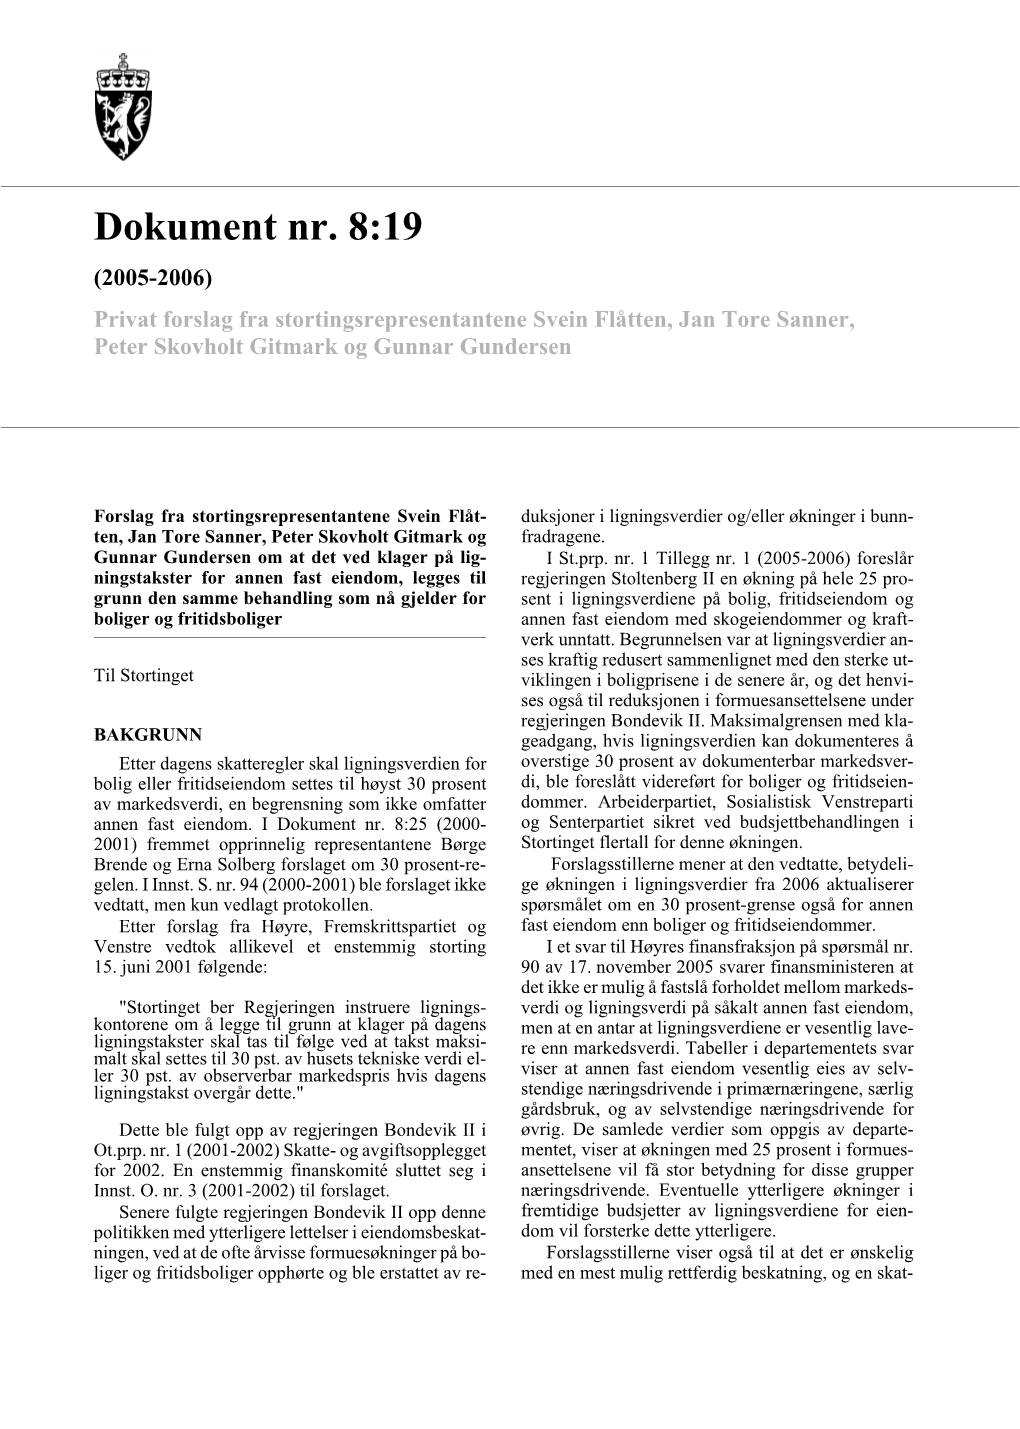 Dokument Nr. 8:19 (2005-2006) Privat Forslag Fra Stortingsrepresentantene Svein Flåtten, Jan Tore Sanner, Peter Skovholt Gitmark Og Gunnar Gundersen